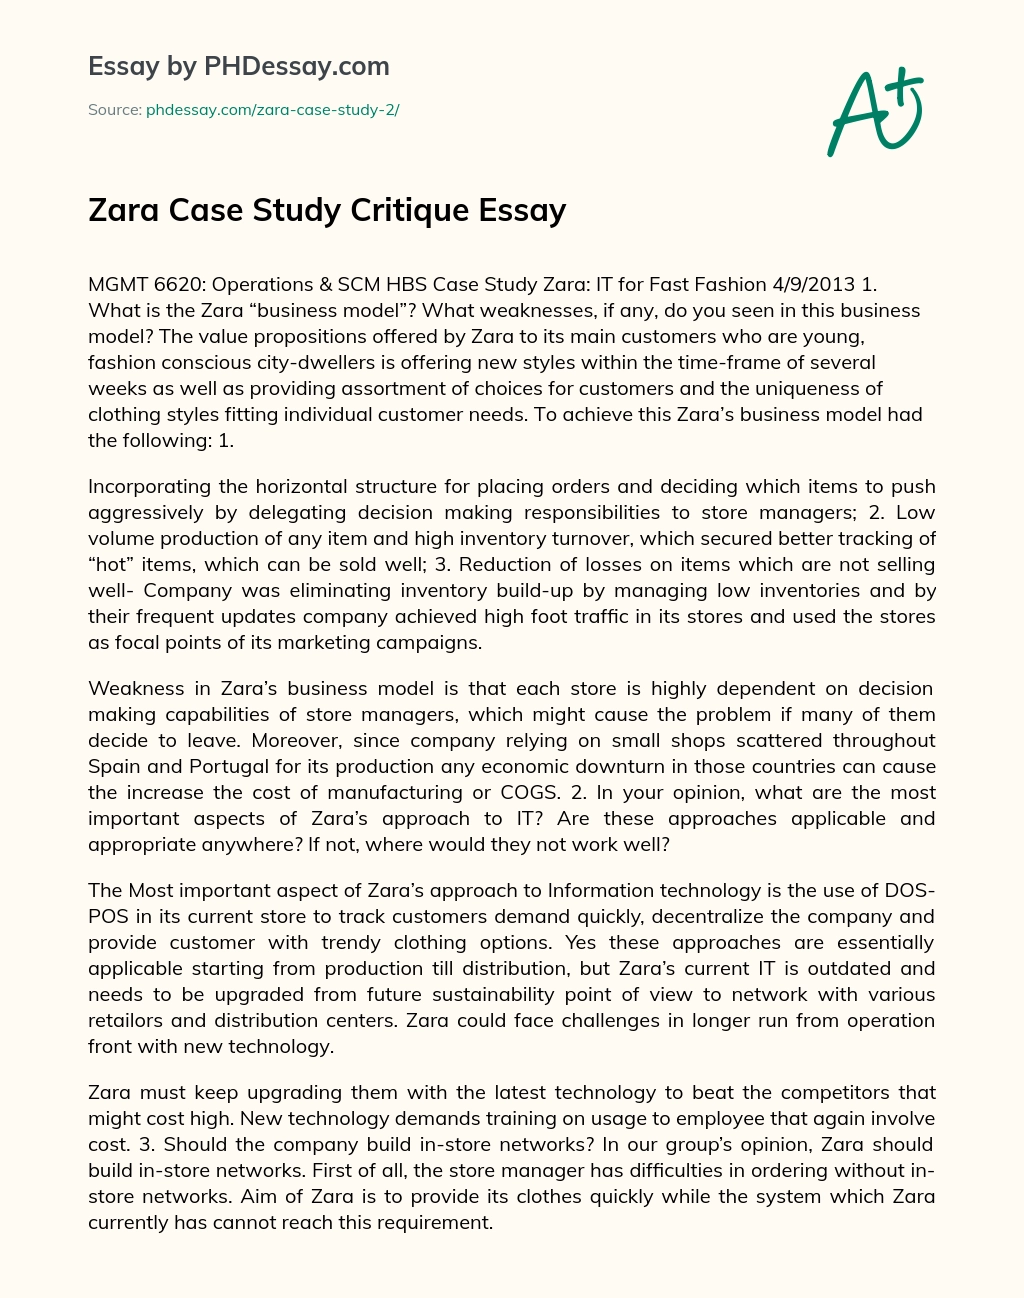 Zara Case Study Critique Essay - PHDessay.com